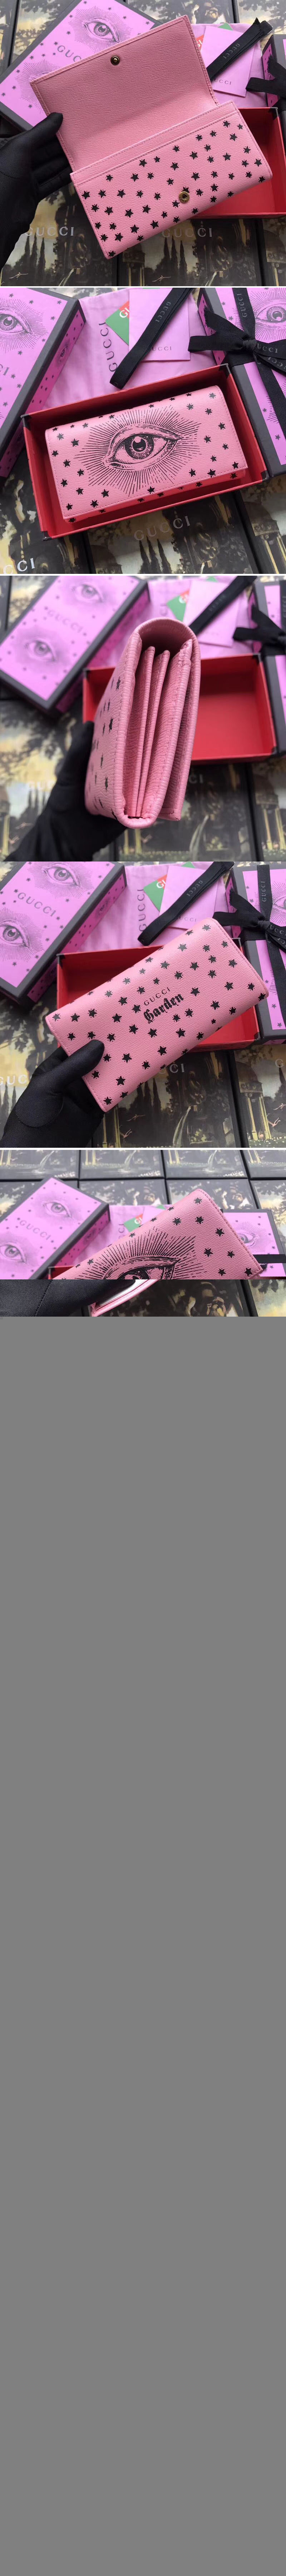 Replica Gucci Eye Print Long Wallet 521556 Pink